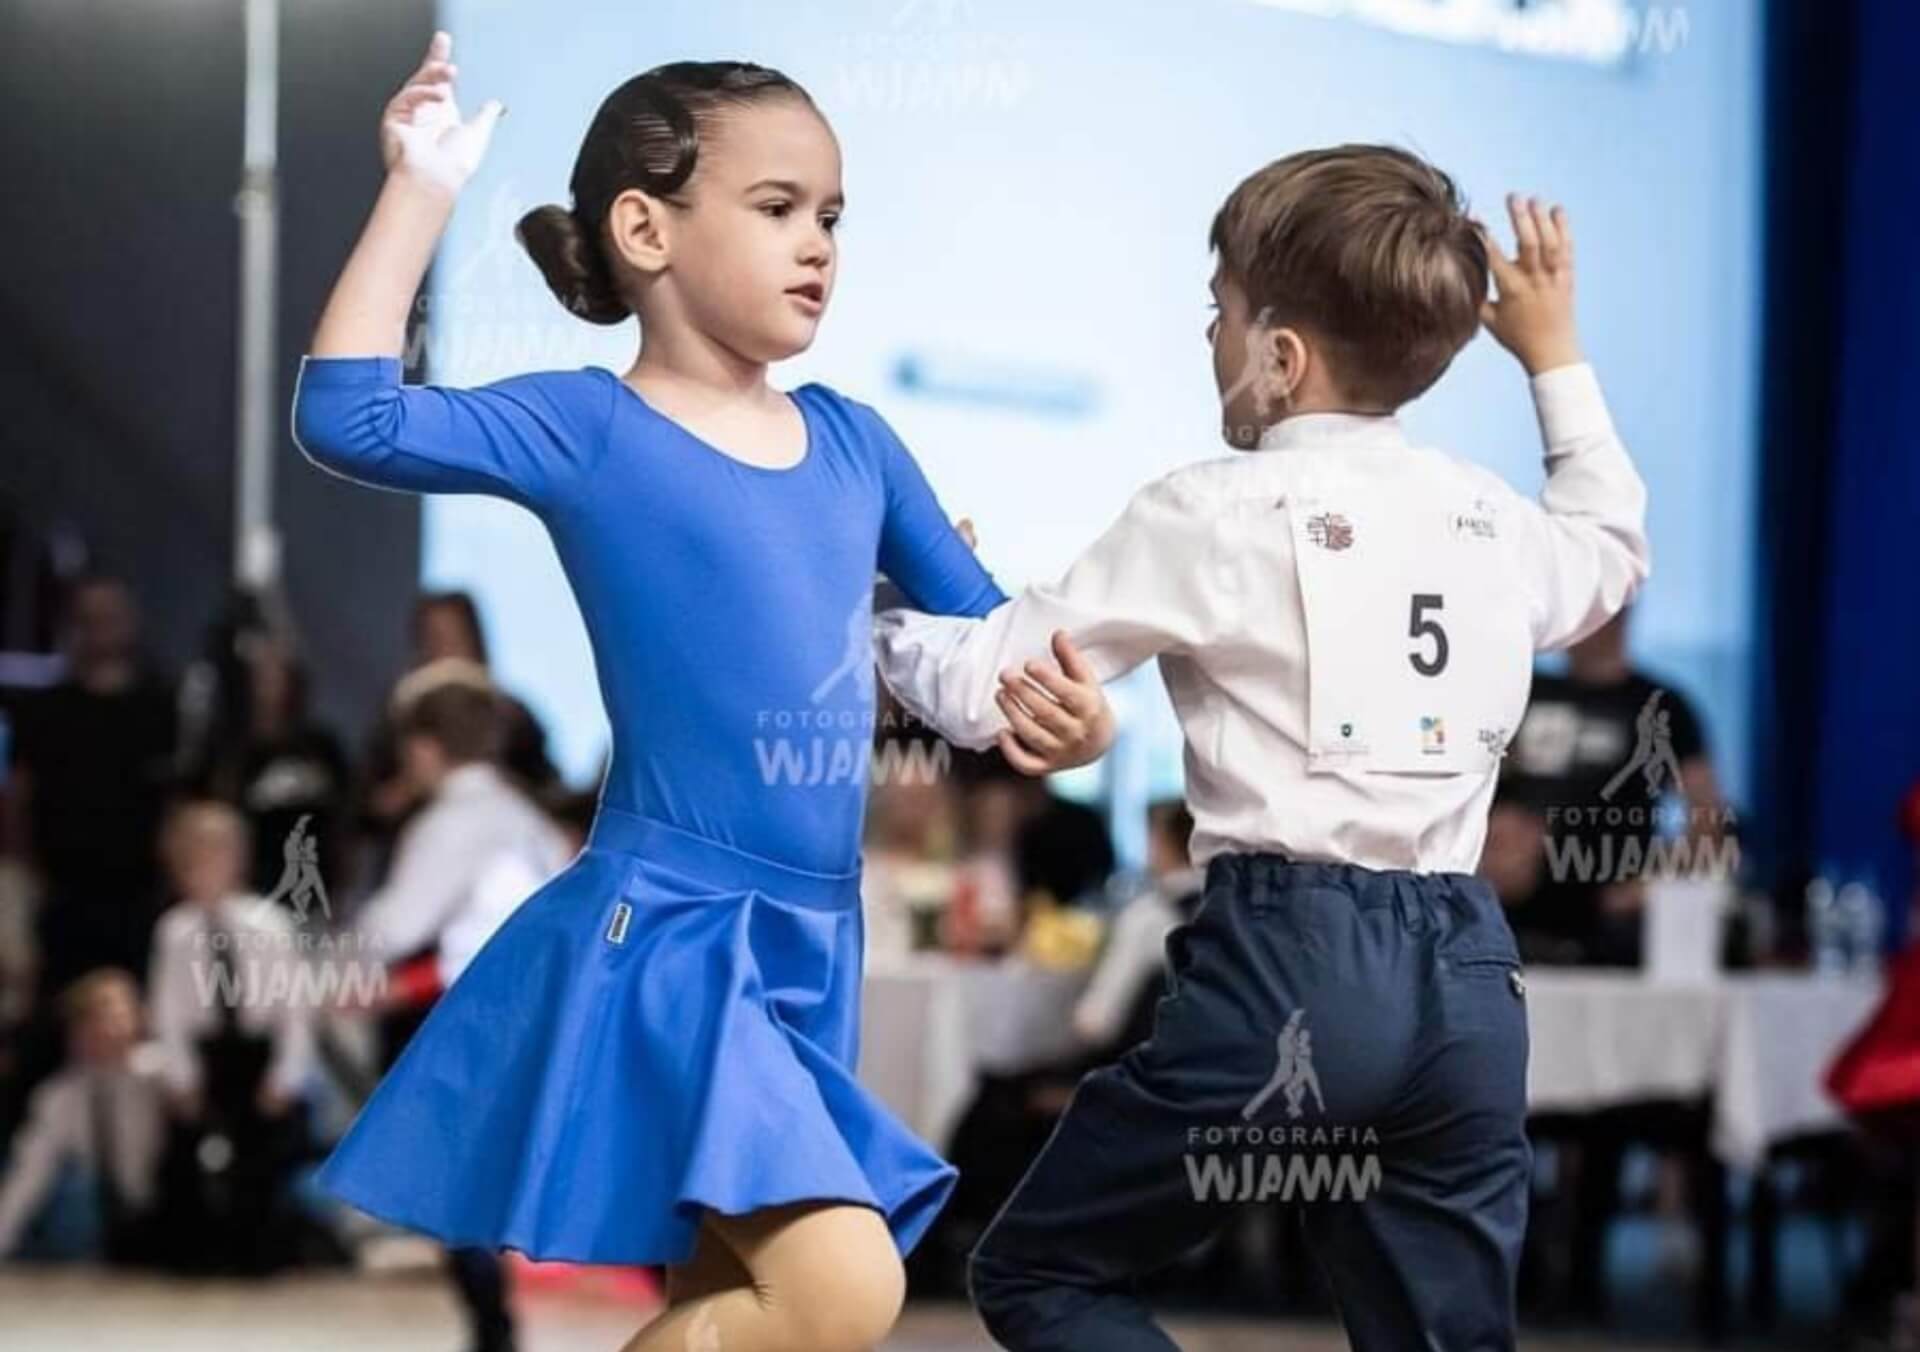 Pasja i Radość Tańca na Parkiecie: Kinga i Szymon Harazim oraz ich Szkoła Tańca K&S Fit&Dance